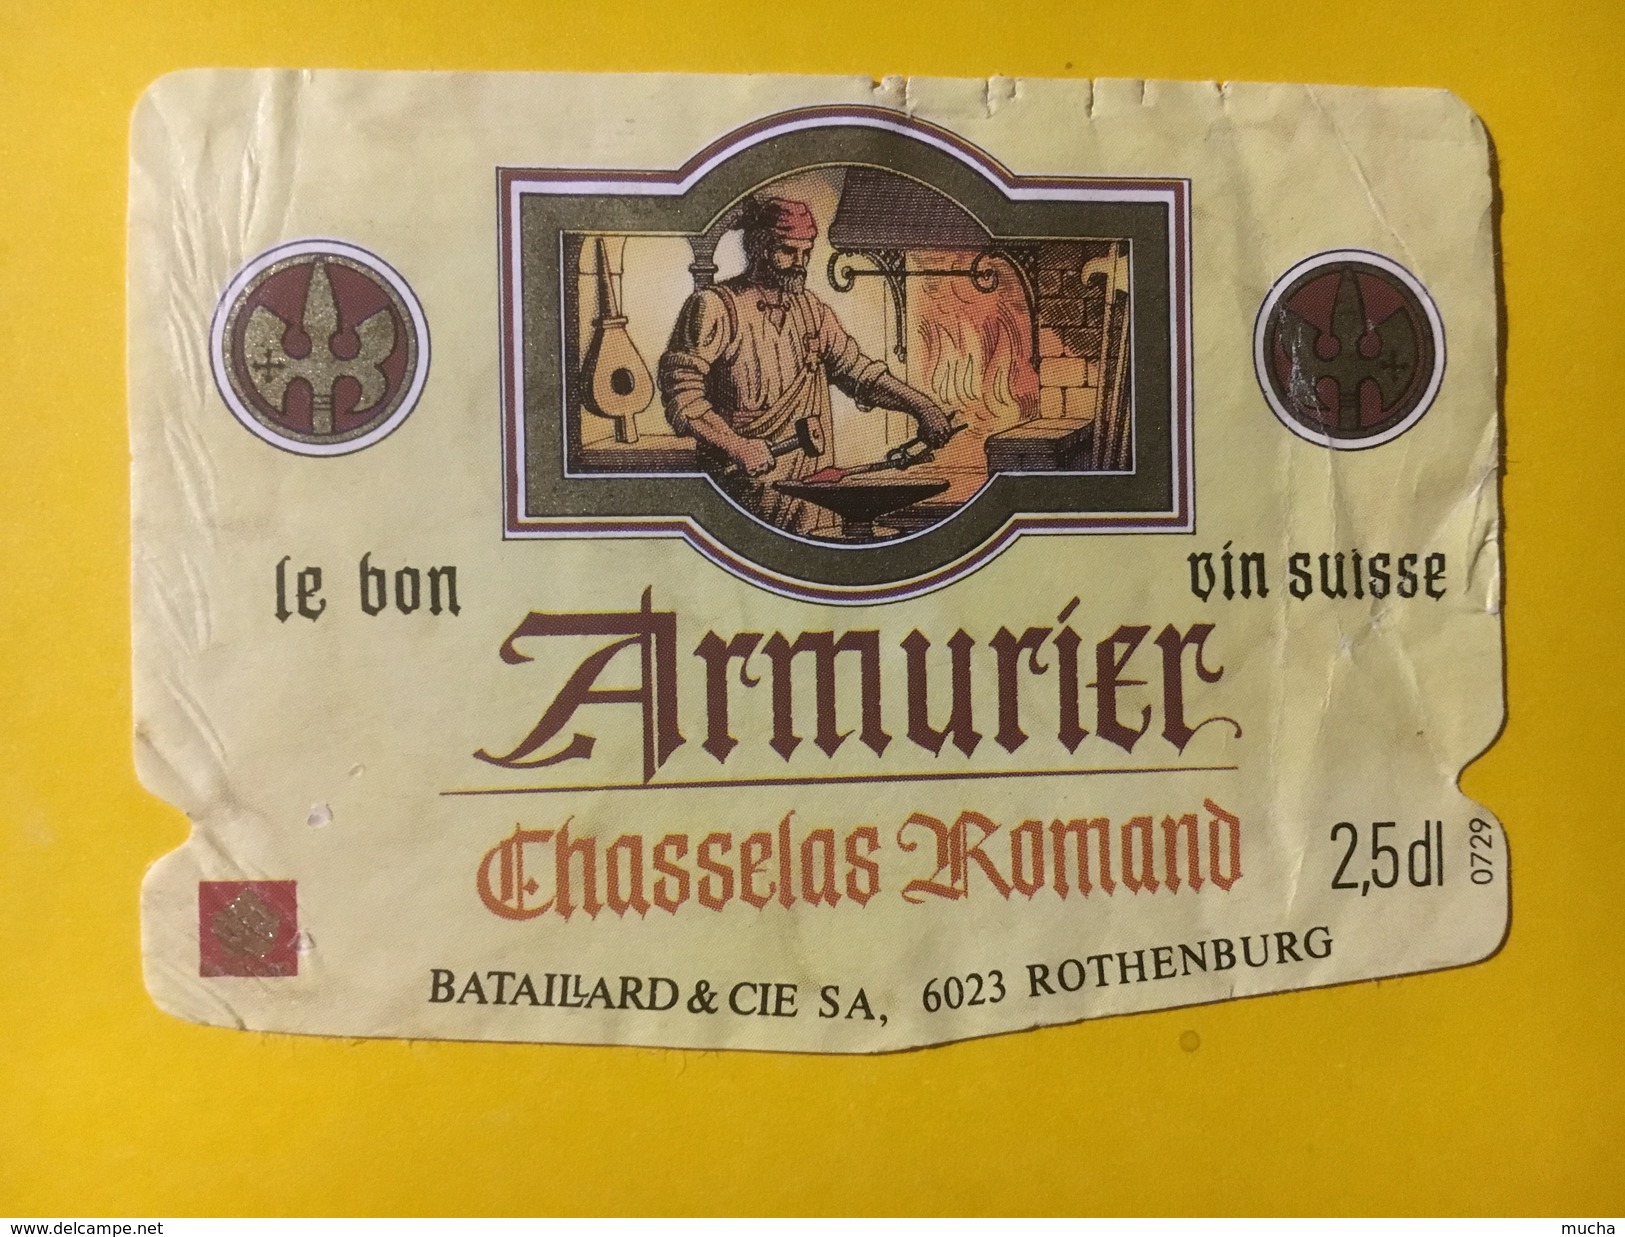 5496 - Armurier Chasselas Romand Suisse 2.5dl Petite étiquette - Lavori